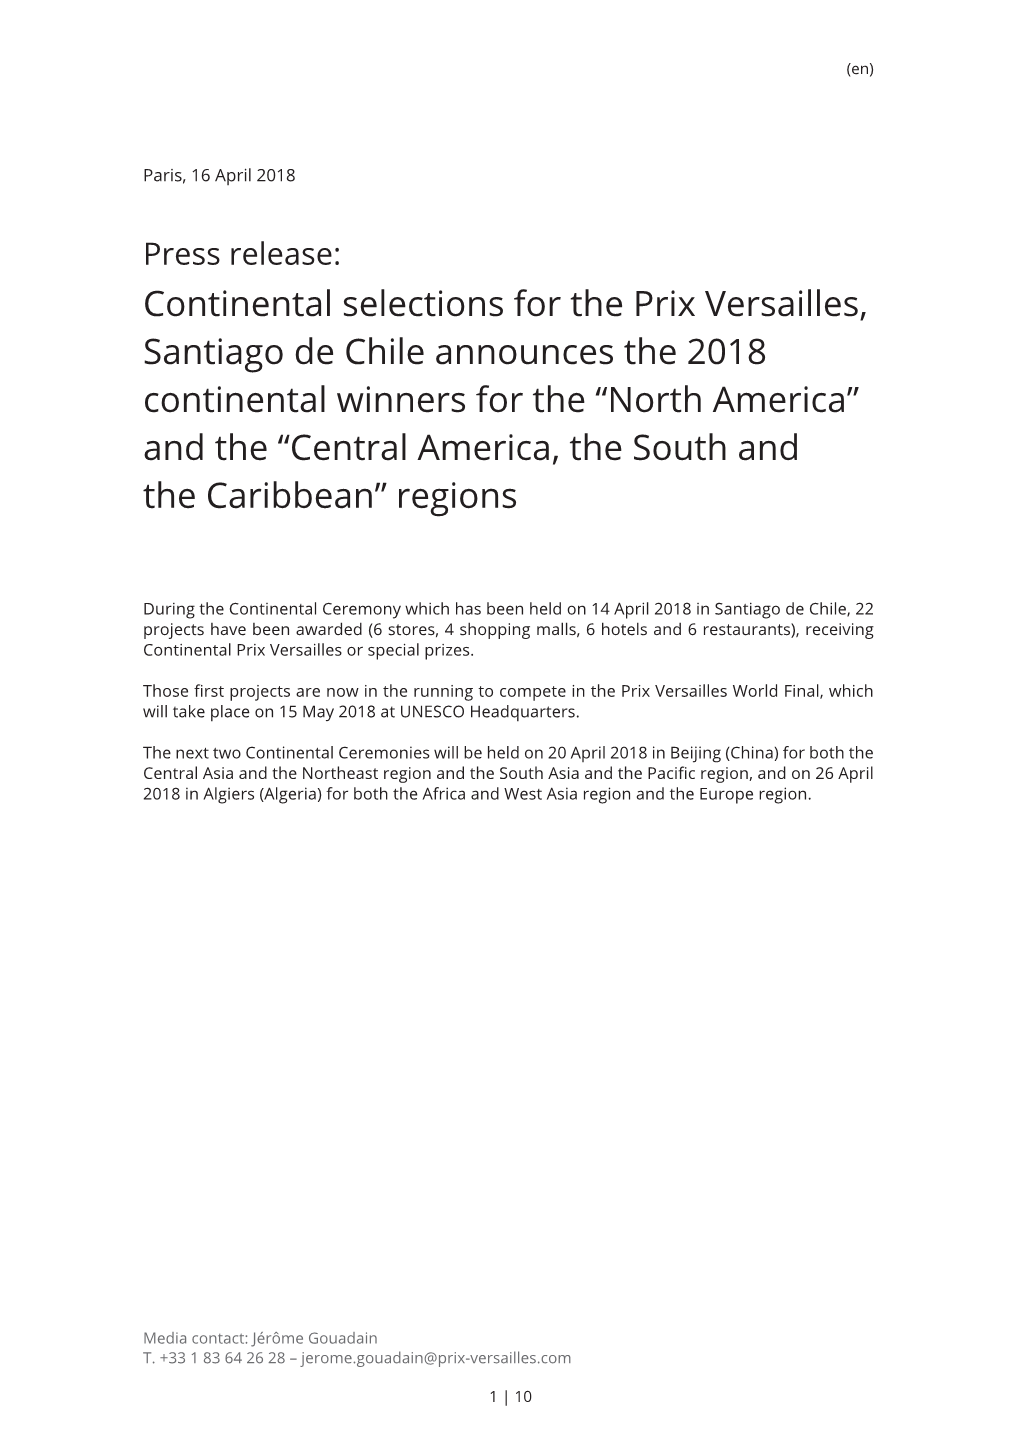 Continental Selections for the Prix Versailles, Santiago De Chile